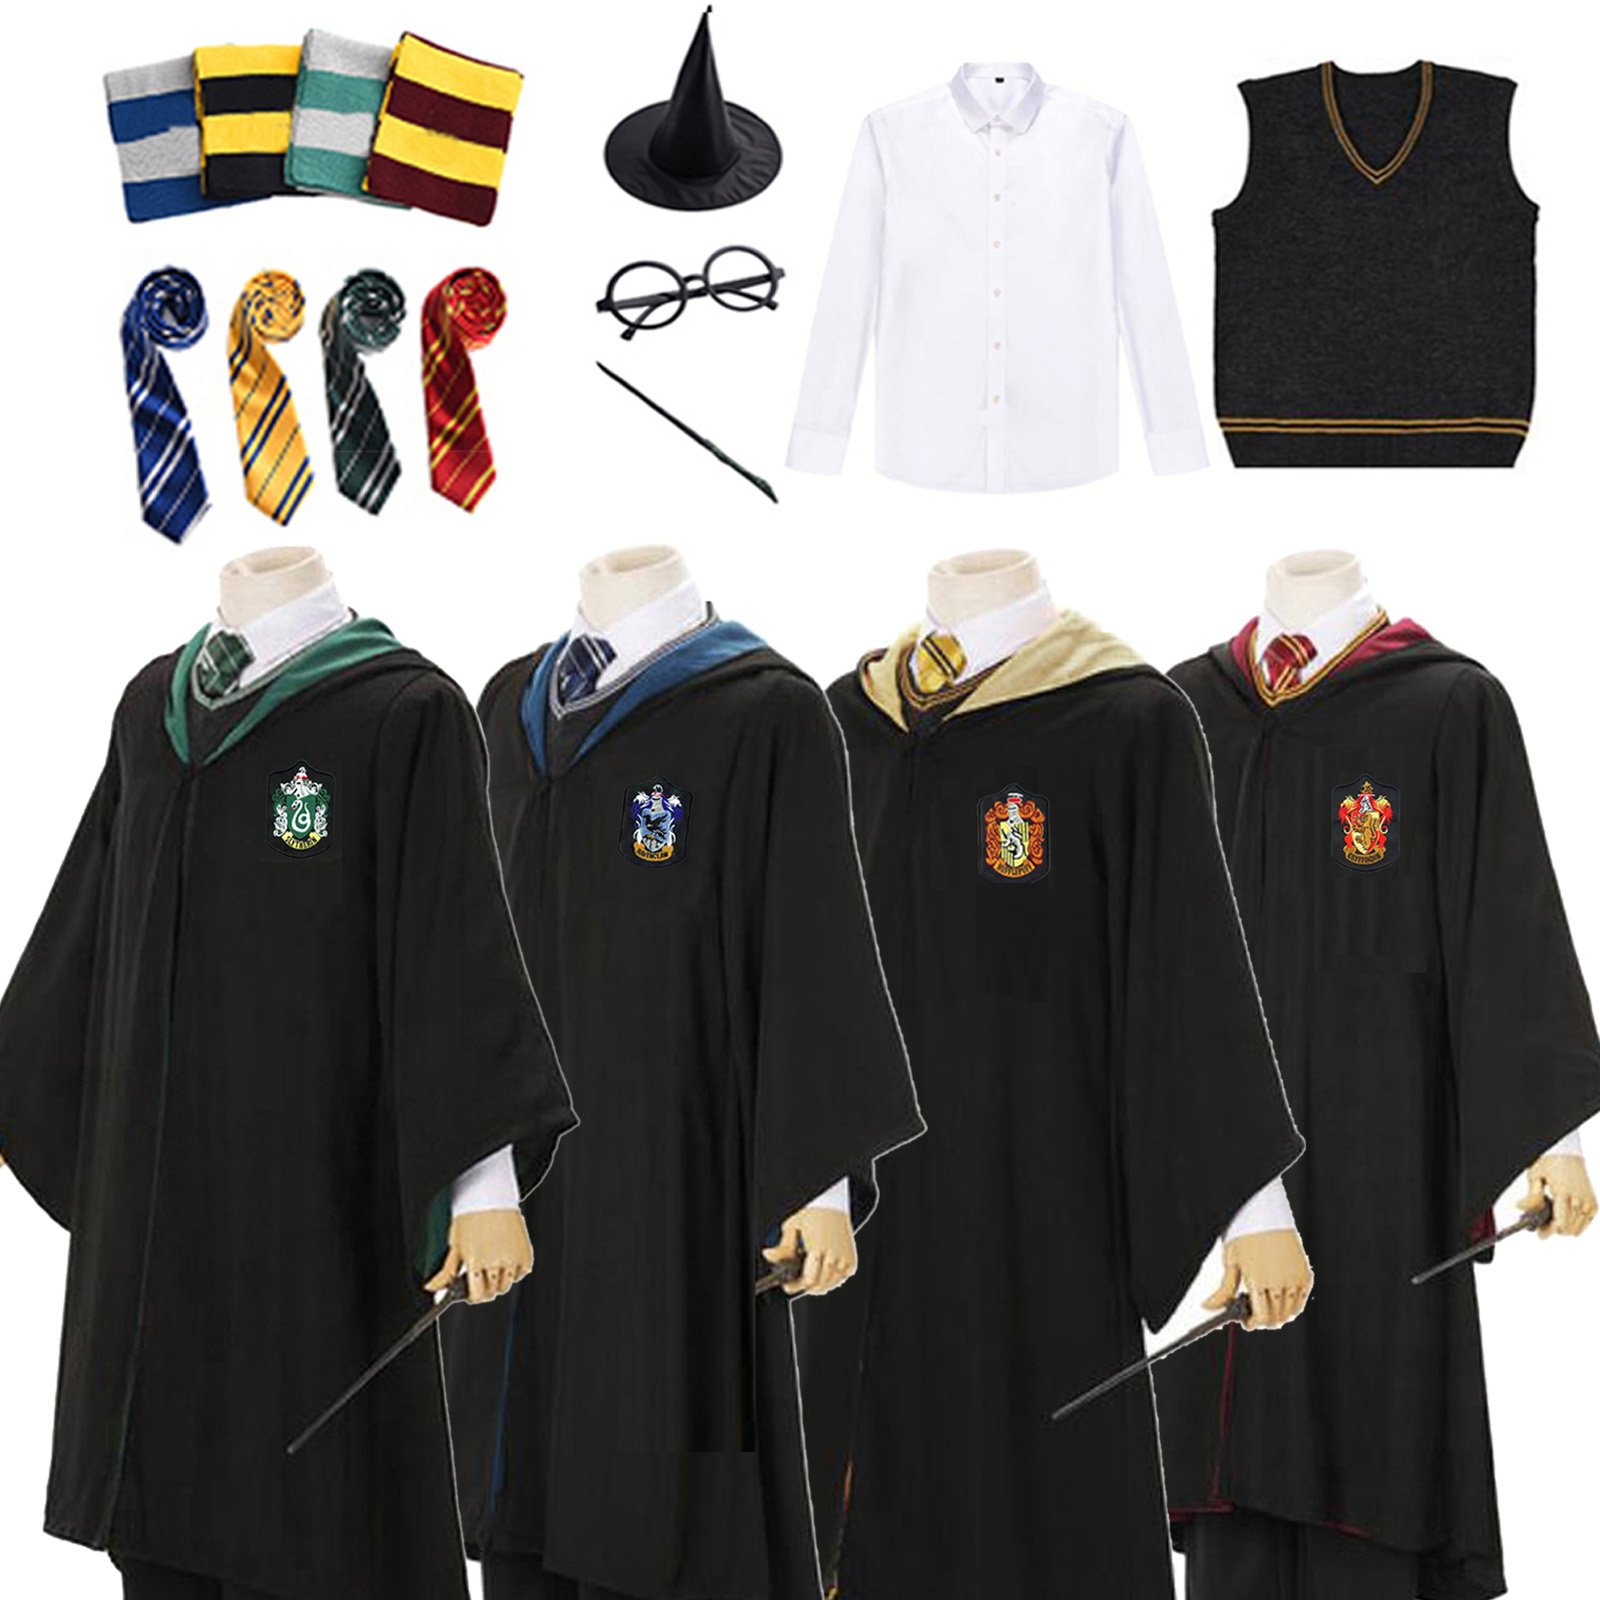 哈利服装衣服魔法袍波特学院服cos服霍格沃茨校服套装巫师袍衣服